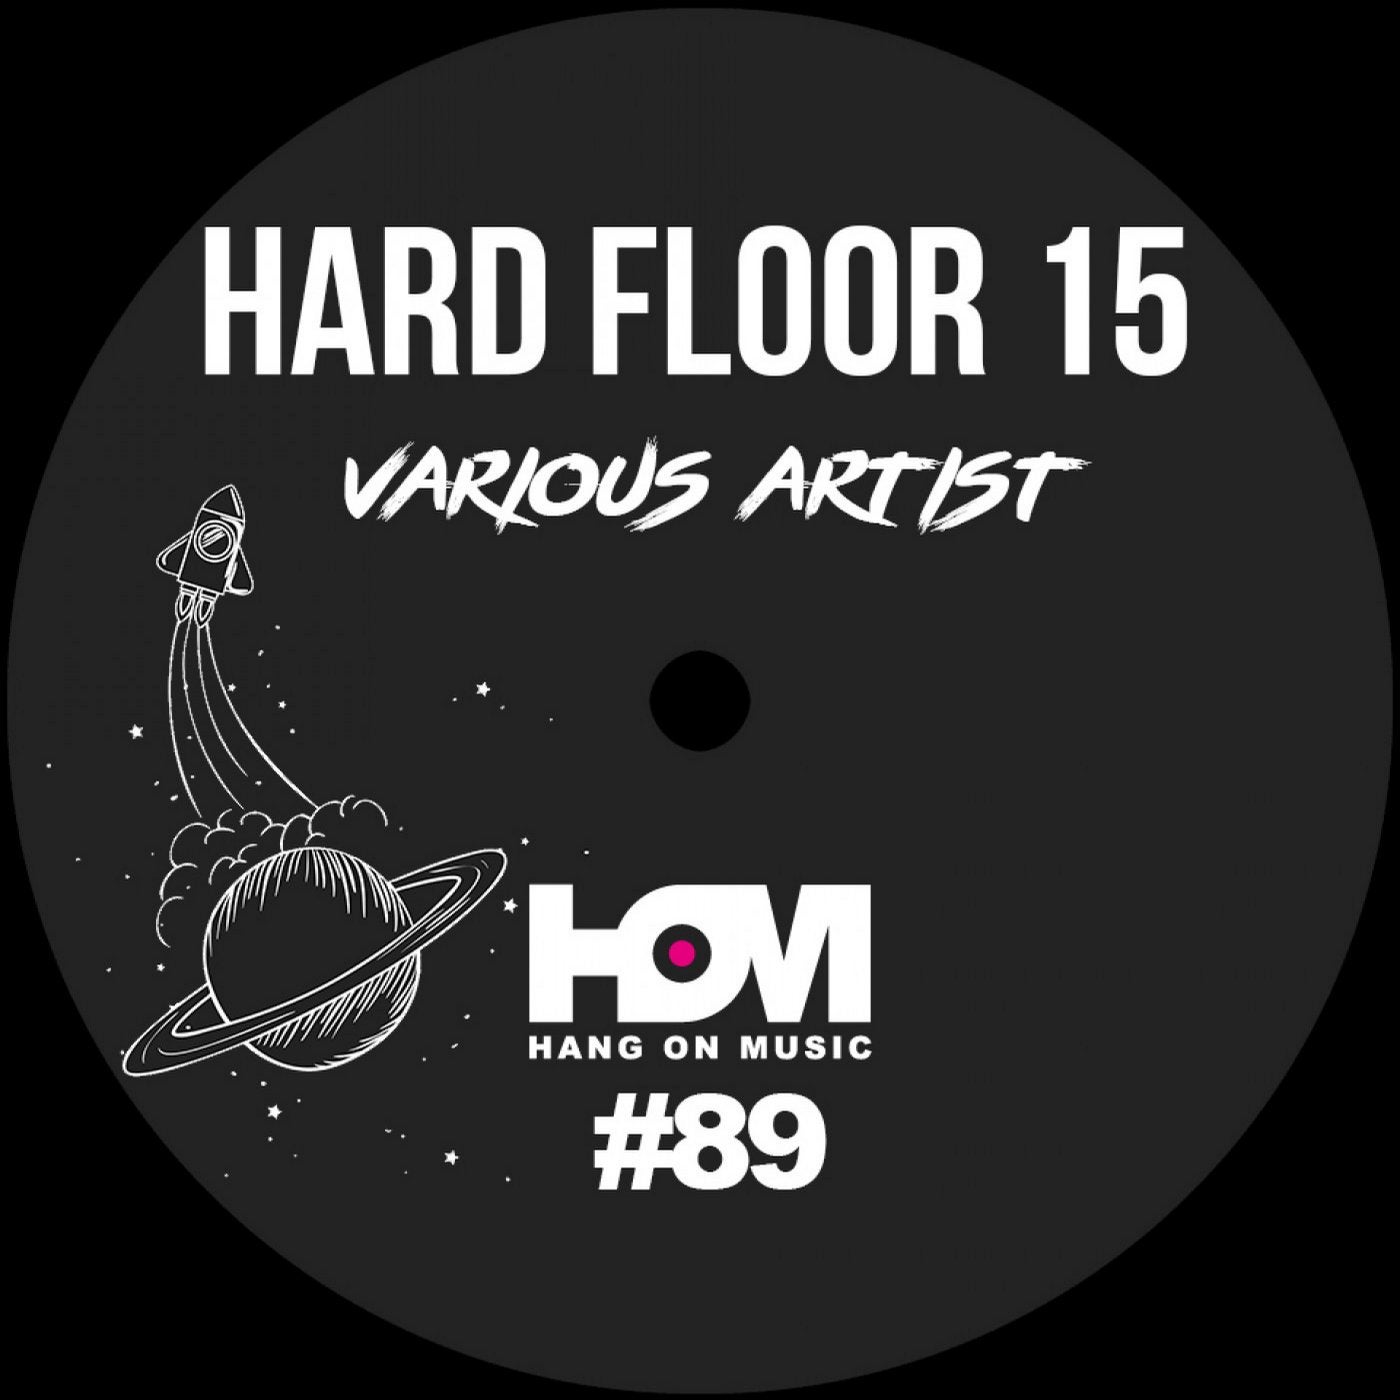 Hard Floor 15